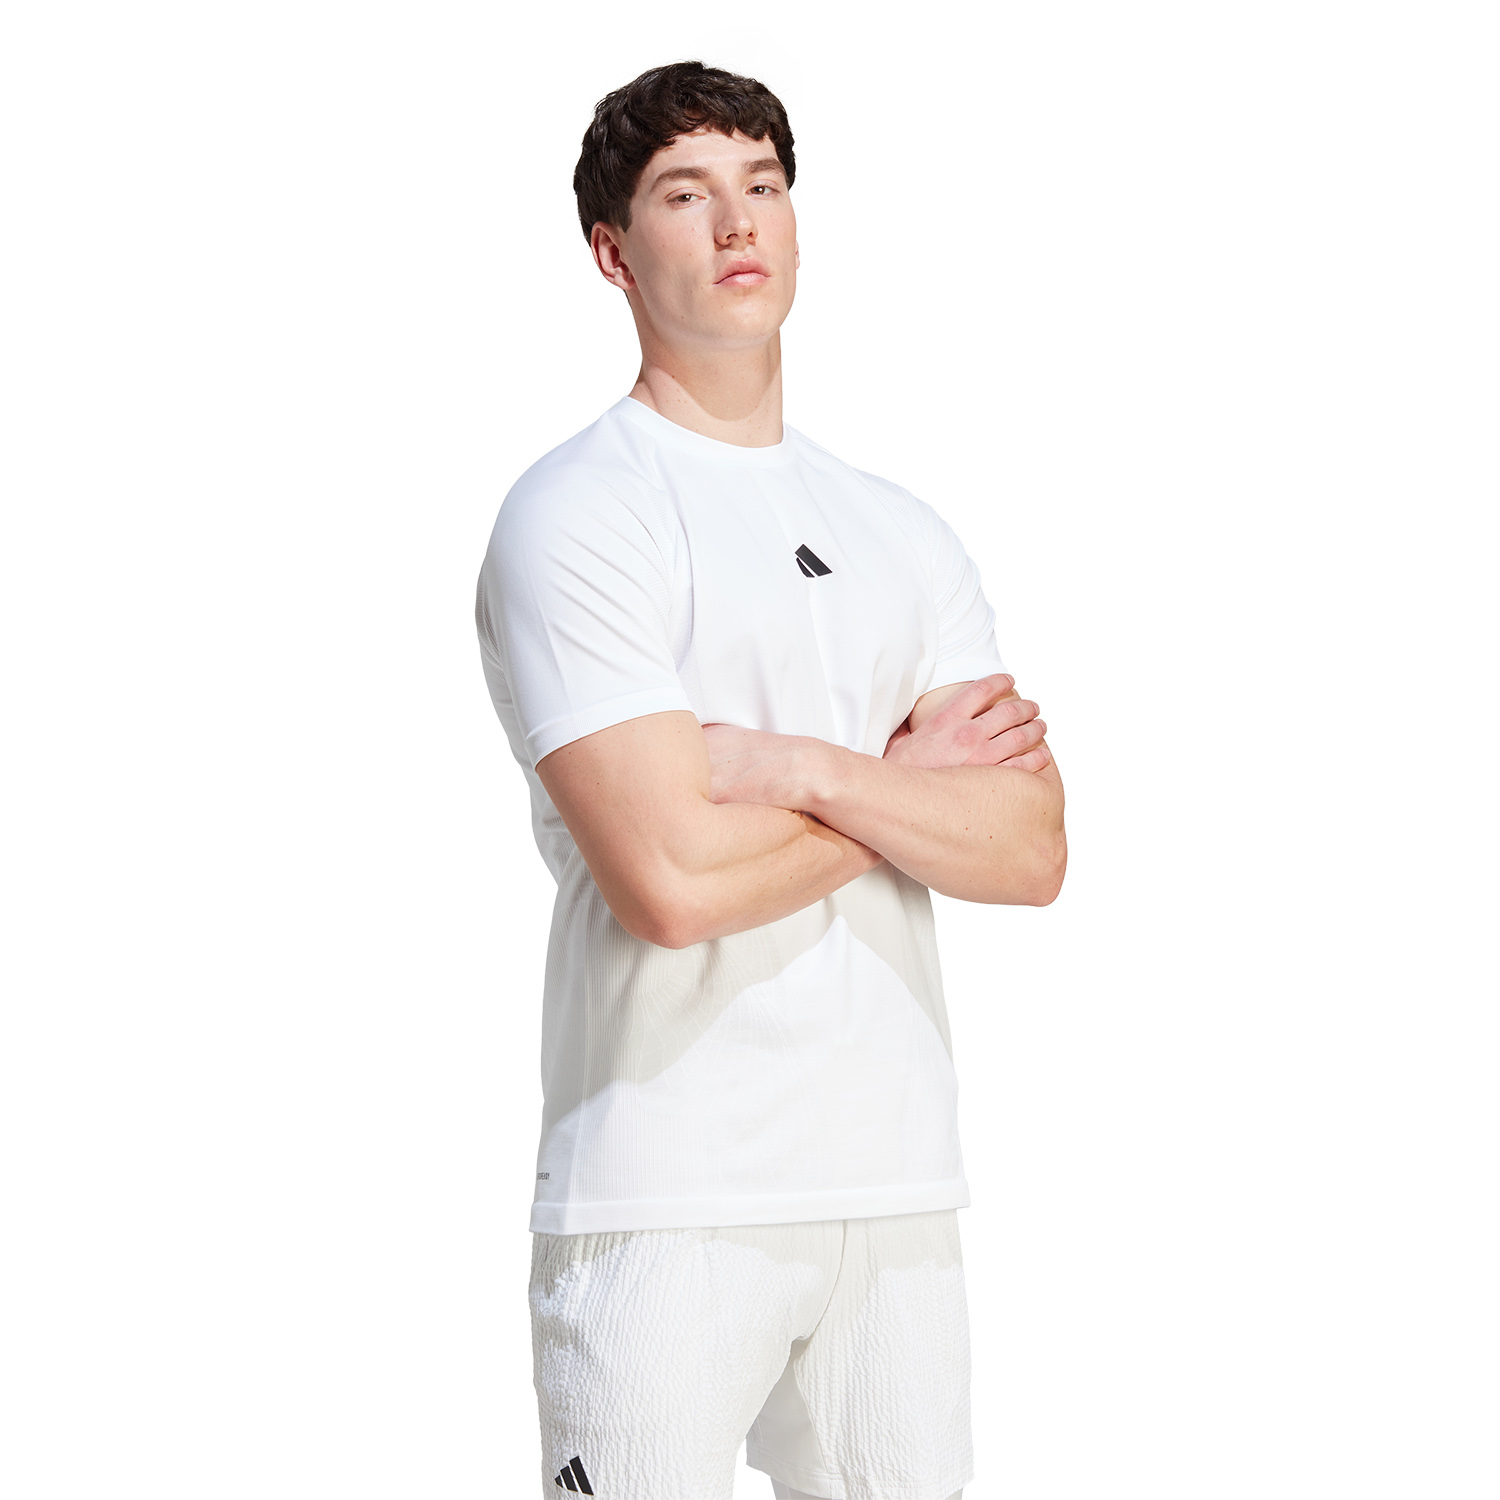 adidas AEROREADY Pro Camiseta - White